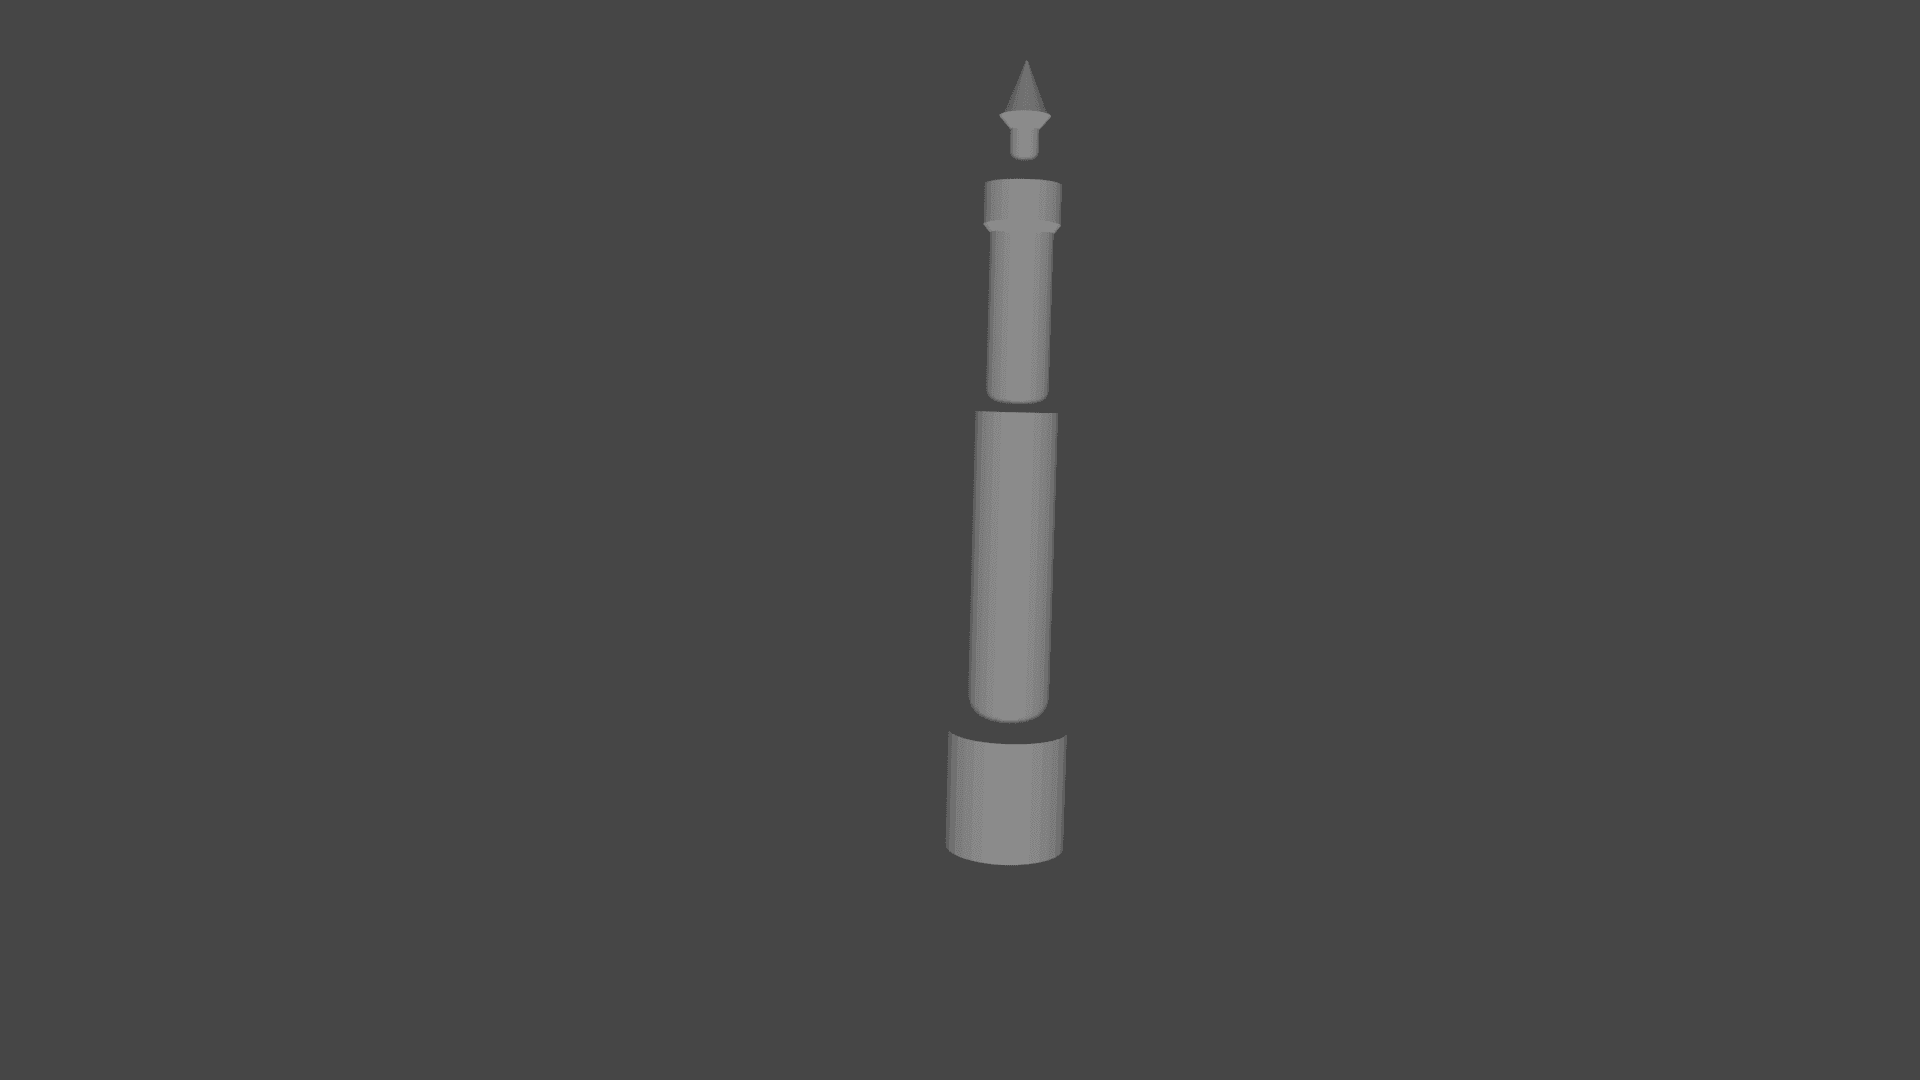  lighthouse 3d model